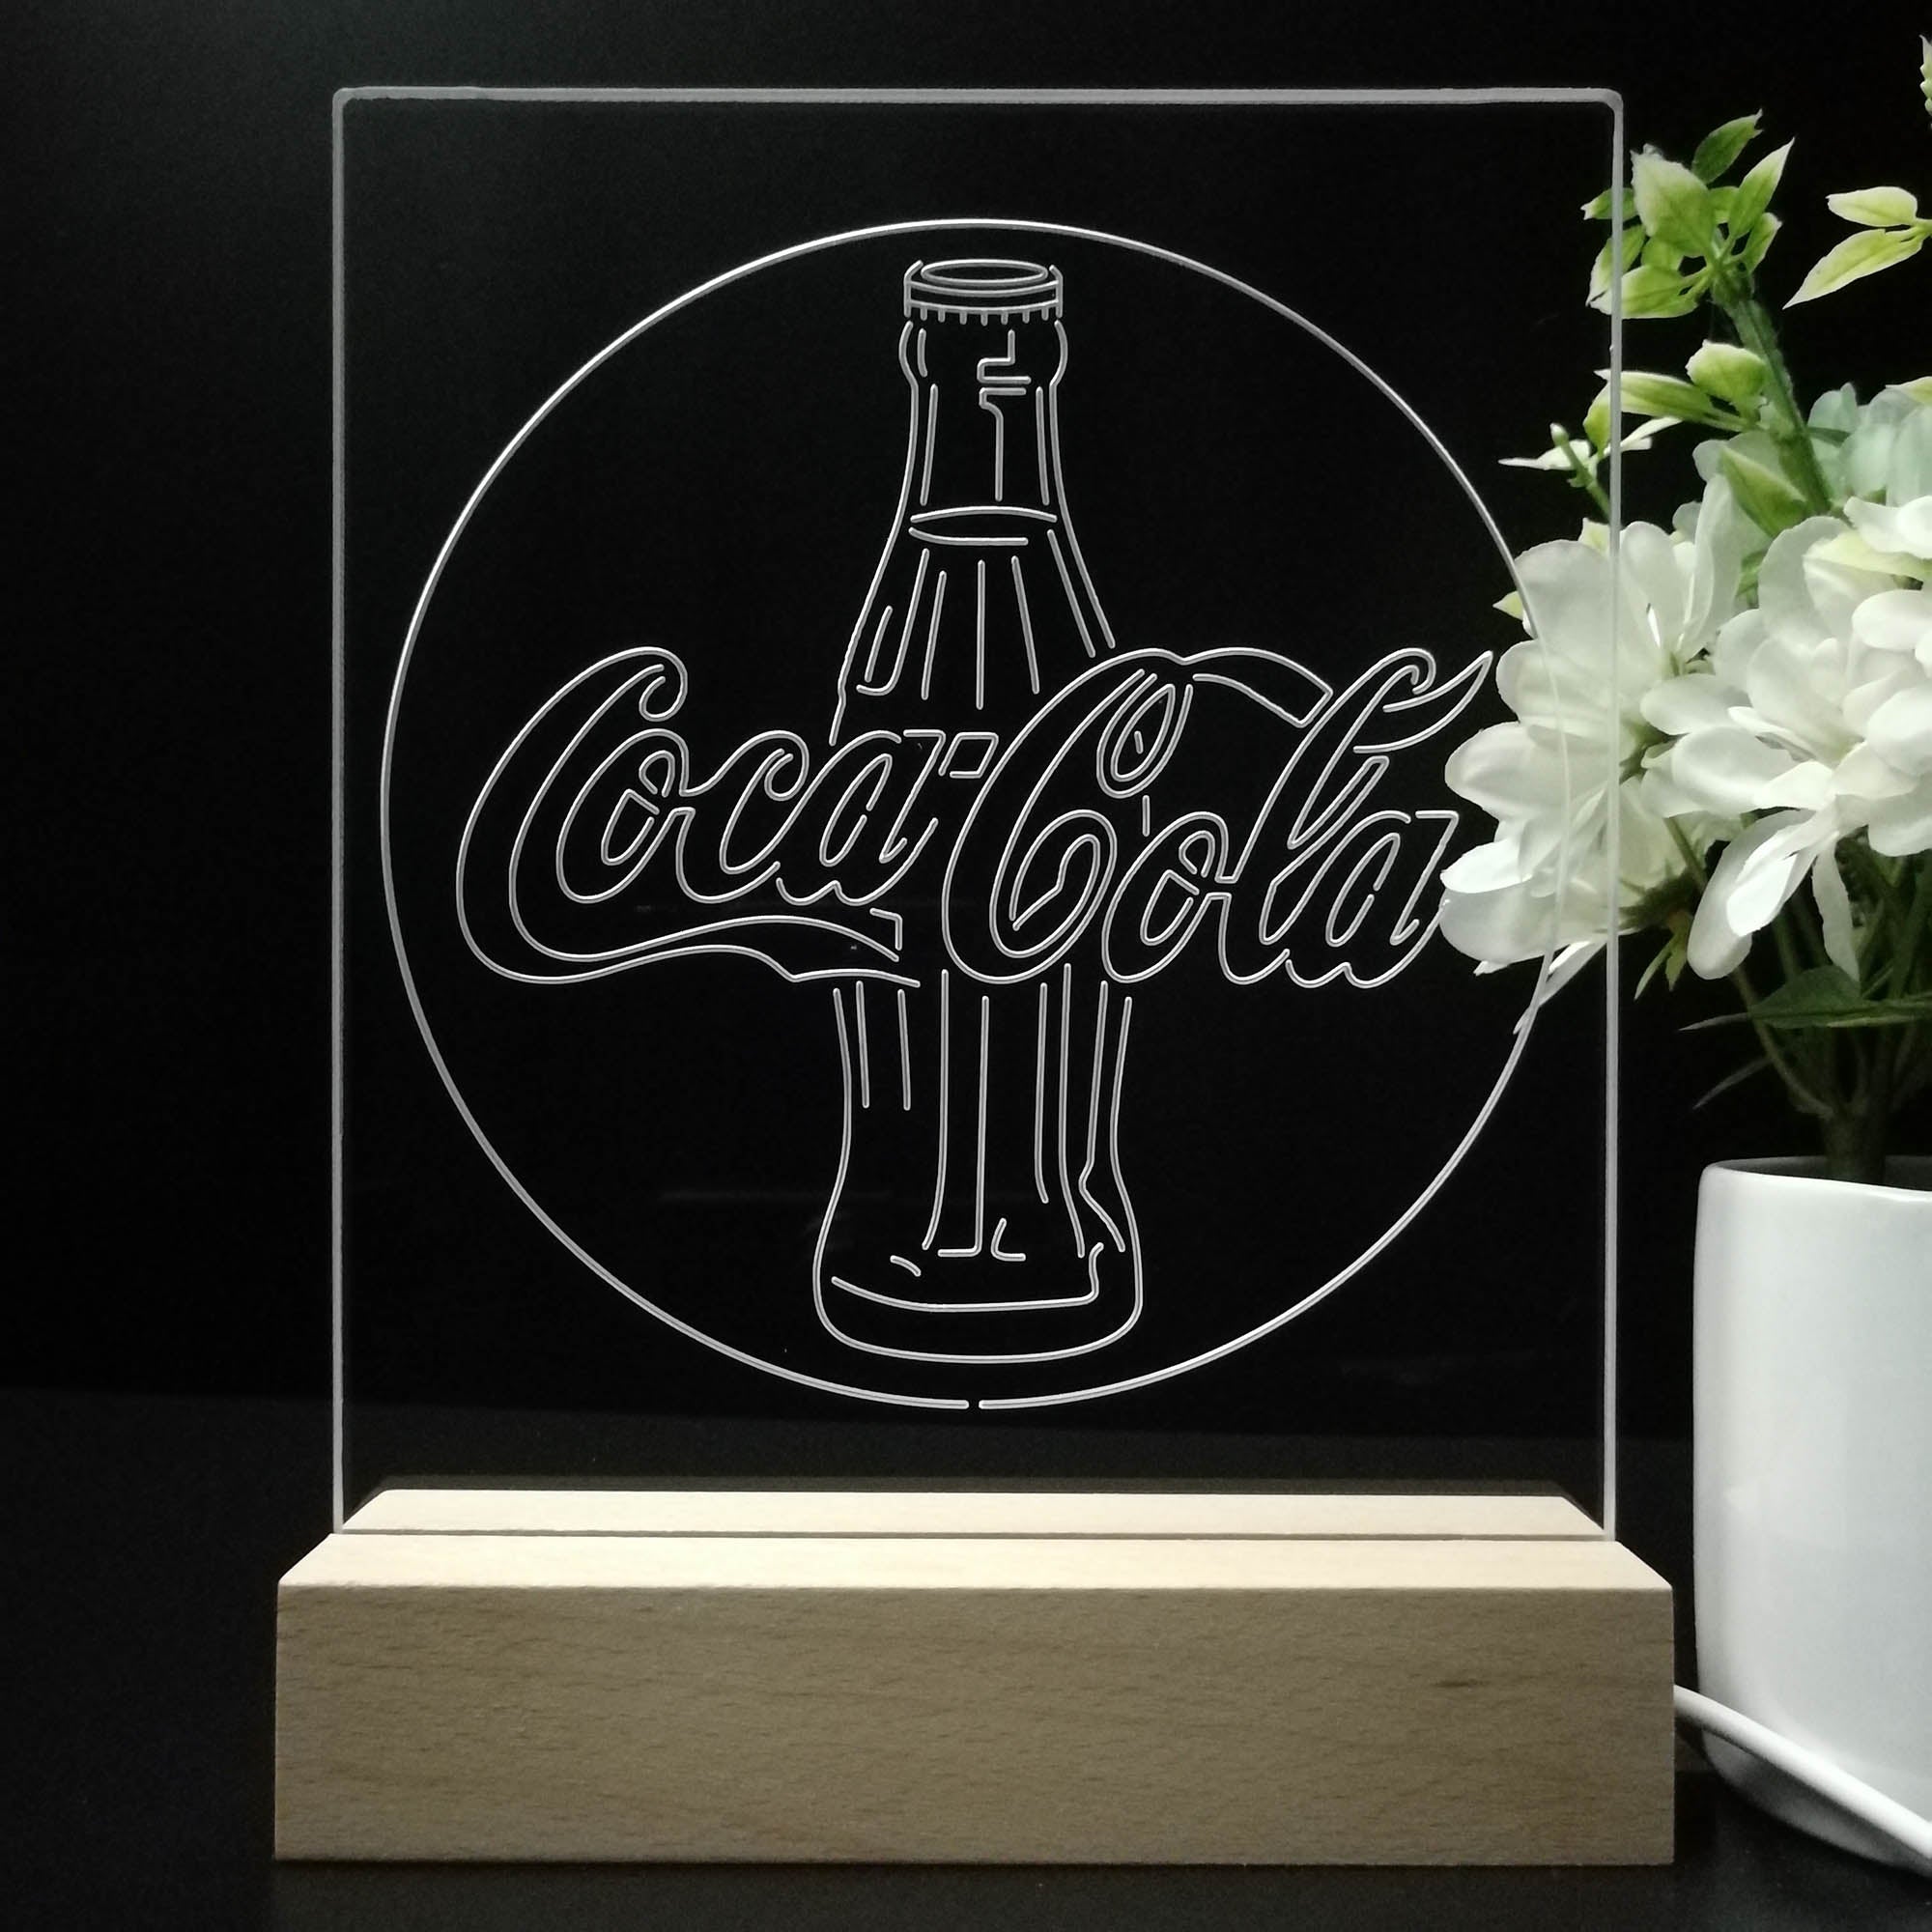 Coca Cola Classic Logo 3D LED Optical Illusion Night Light Table Lamp